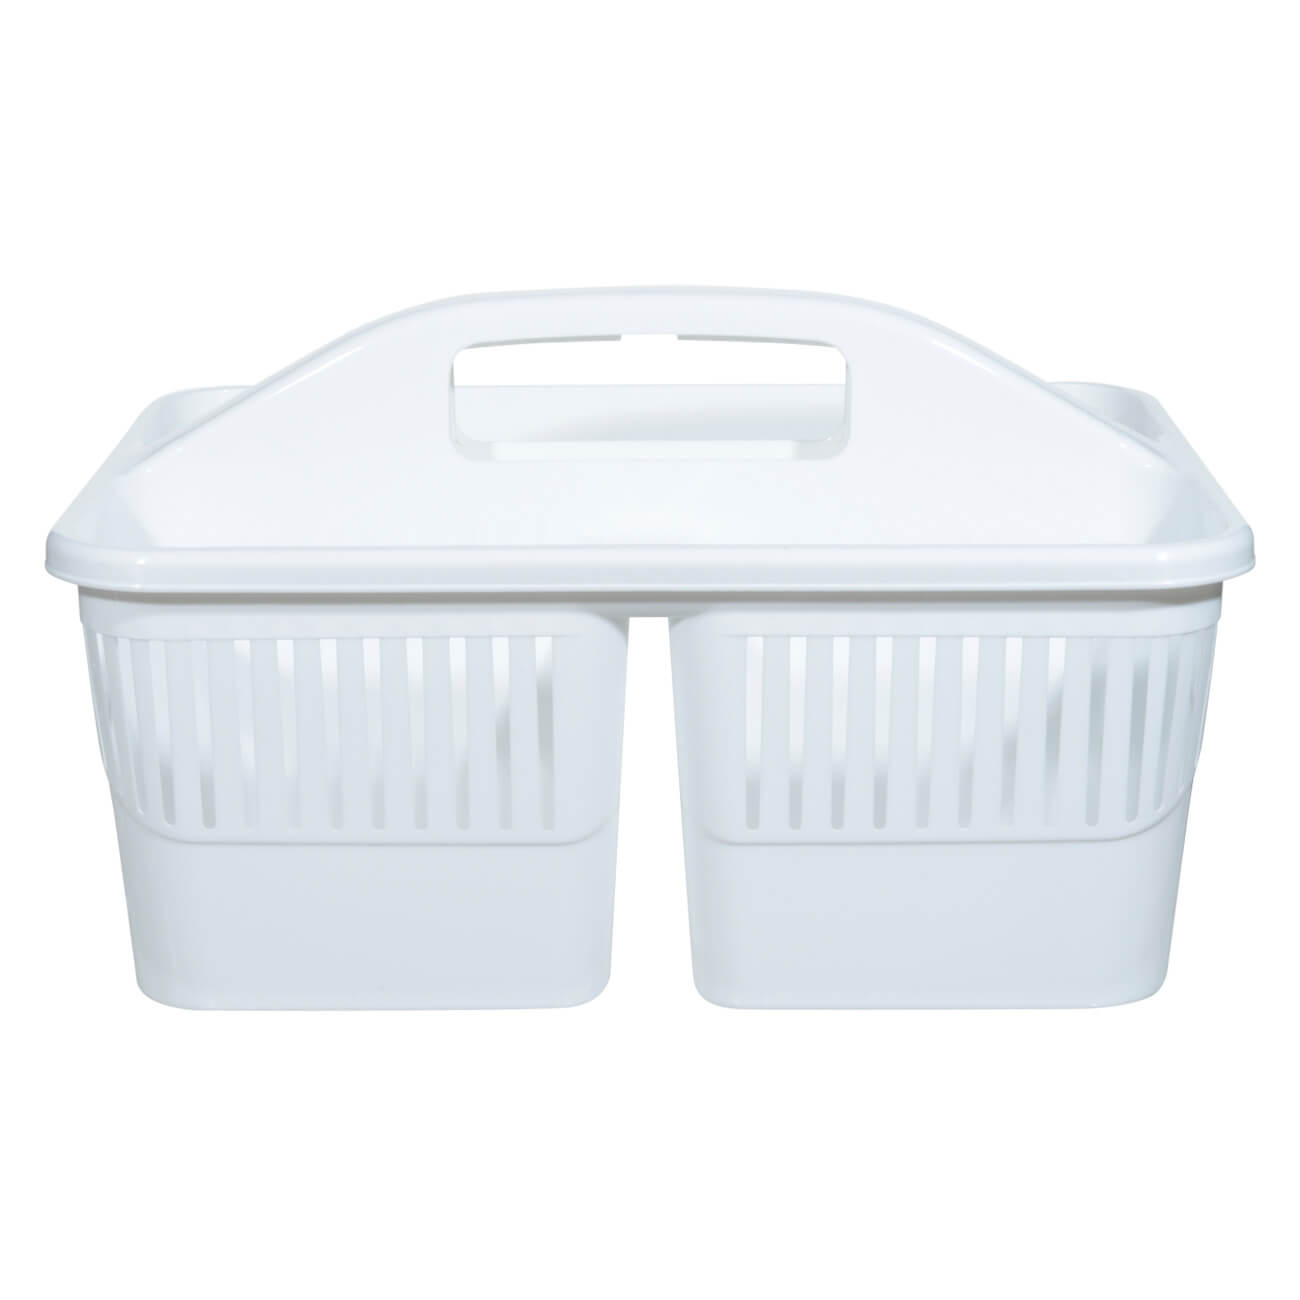 Органайзер для моющих средств, 23х30 см, переносной, пластик, белый, Compact органайзер для кухни пластик дозатор для мыла стакан белый y4 7227